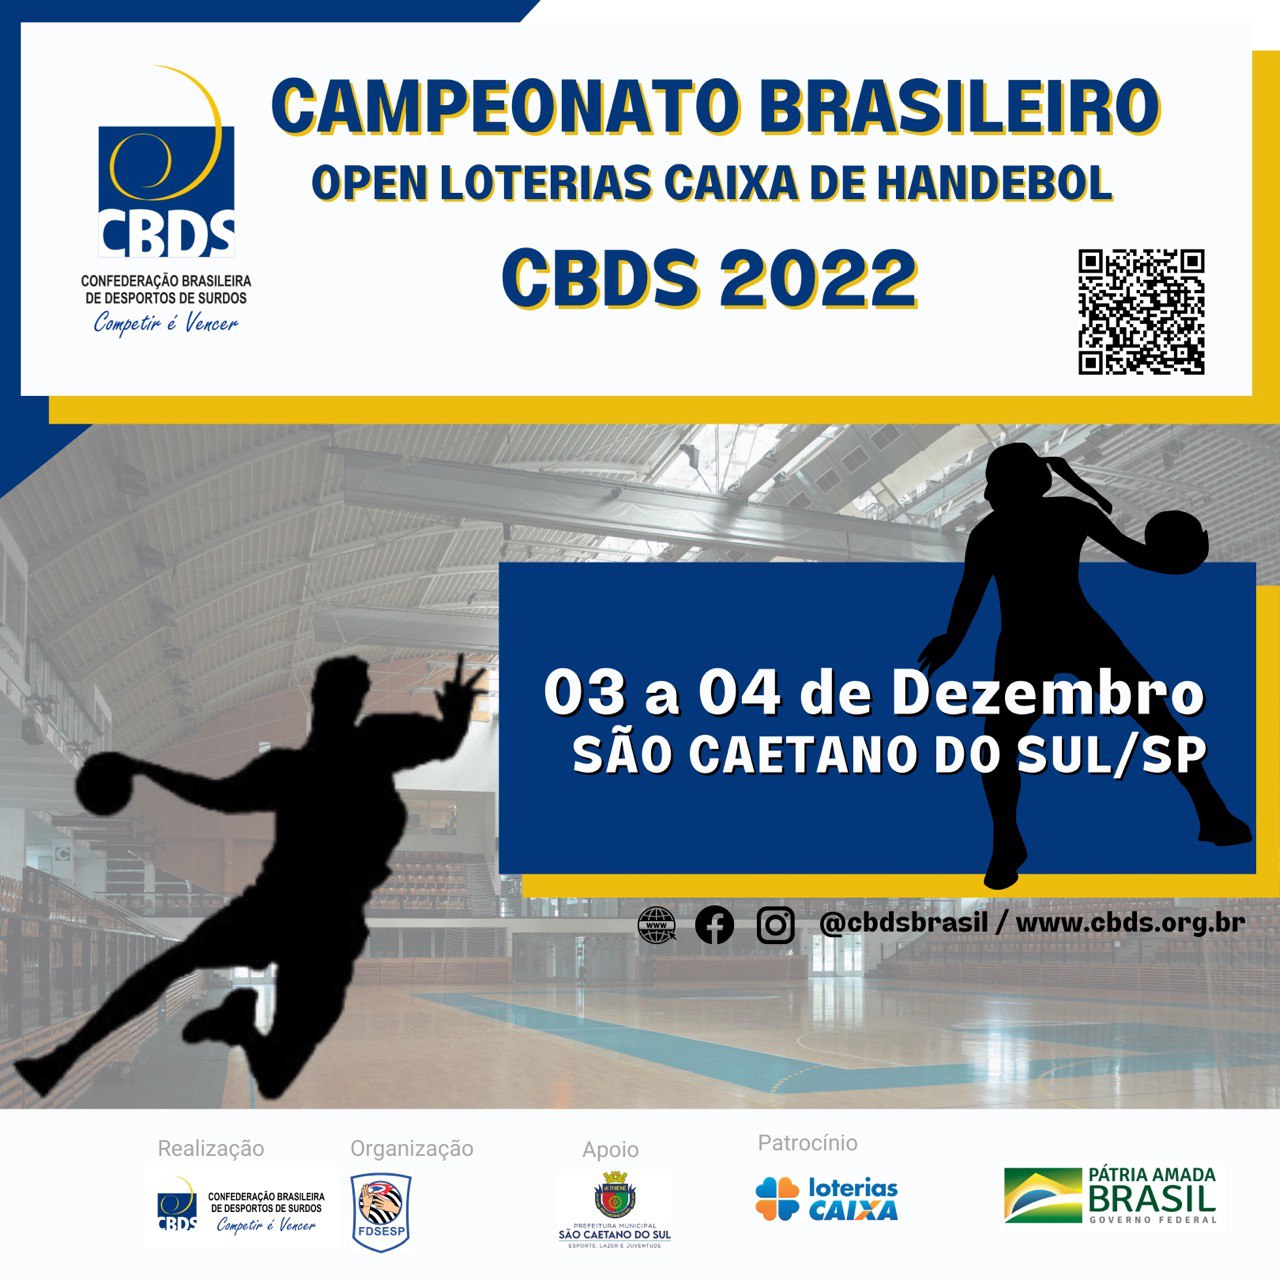 Campeonato Brasileiro Open Loterias Caixa de Handebol 2022